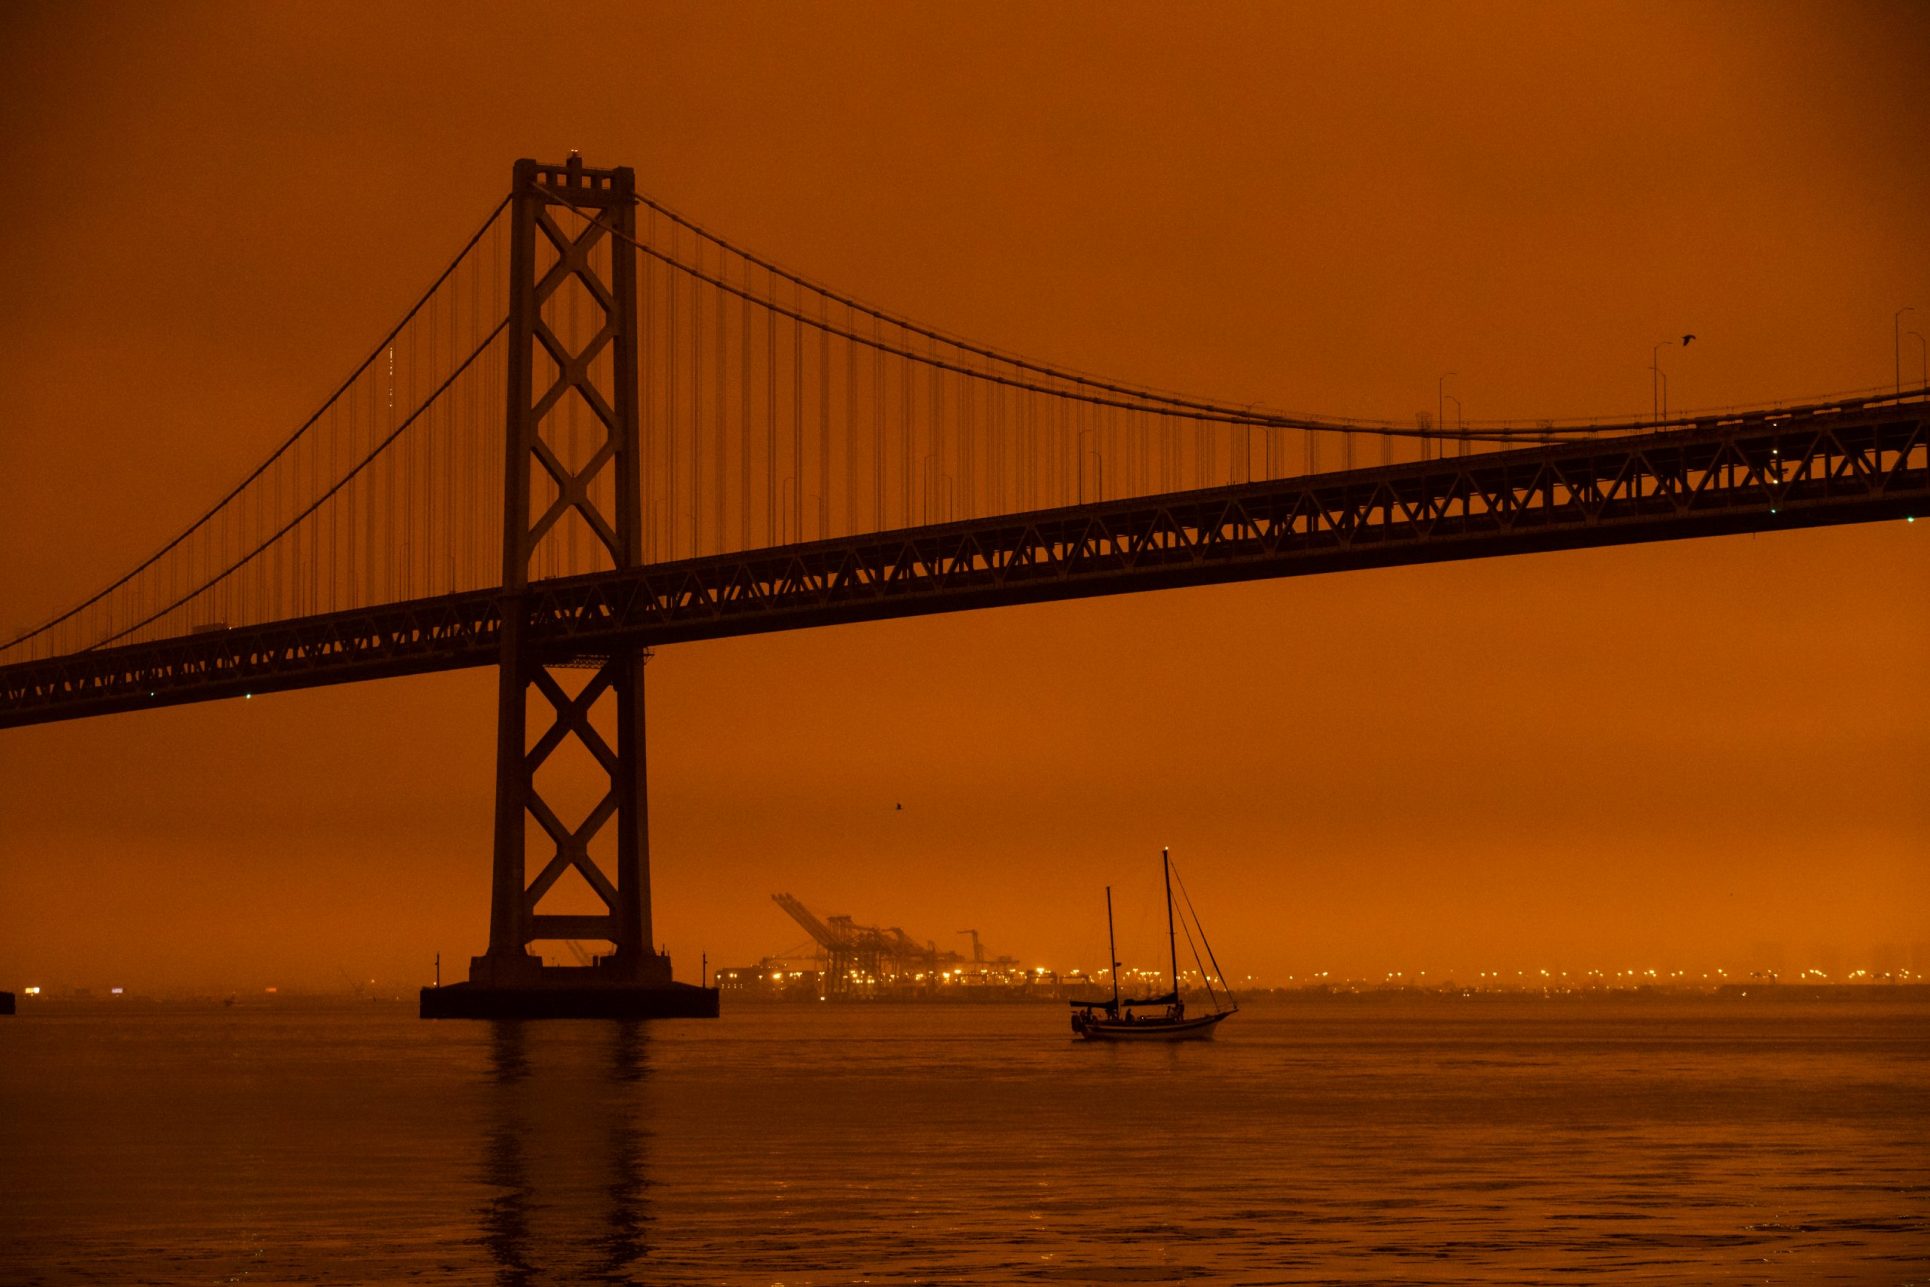 San Francisco cielo anaranjado